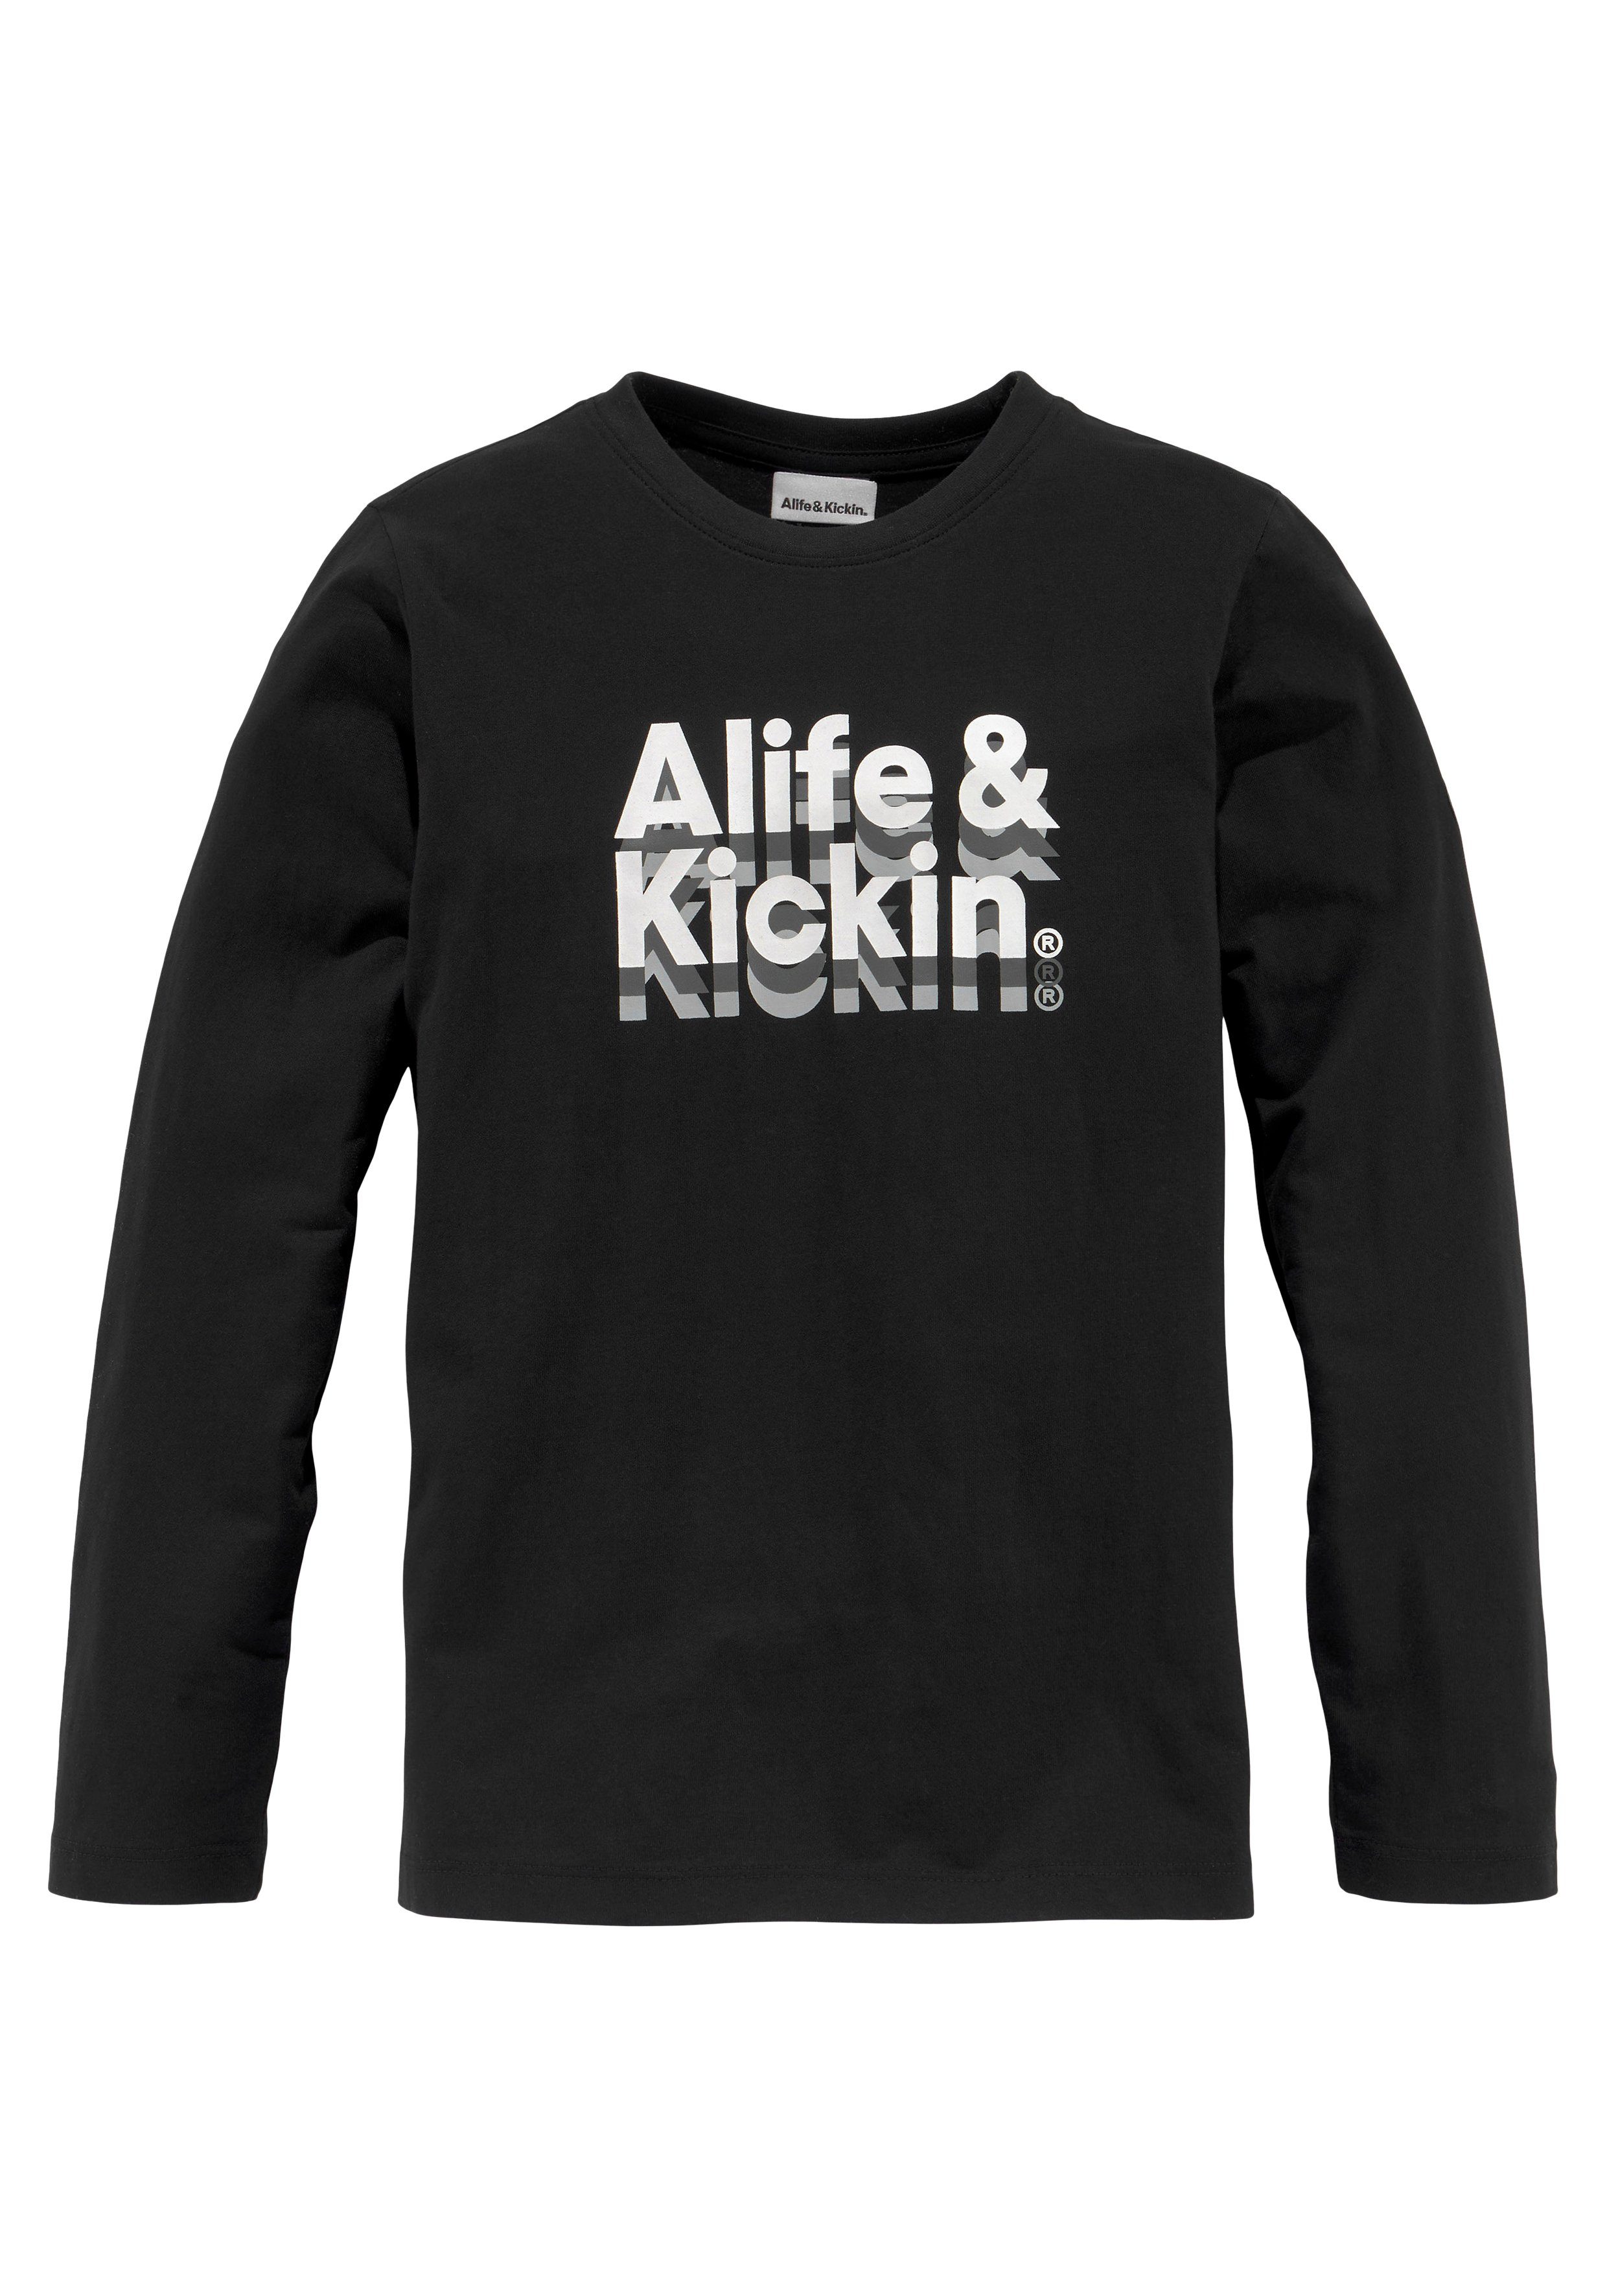 NEUE Kickin Langarmshirt & Alife Logo-Print MARKE!